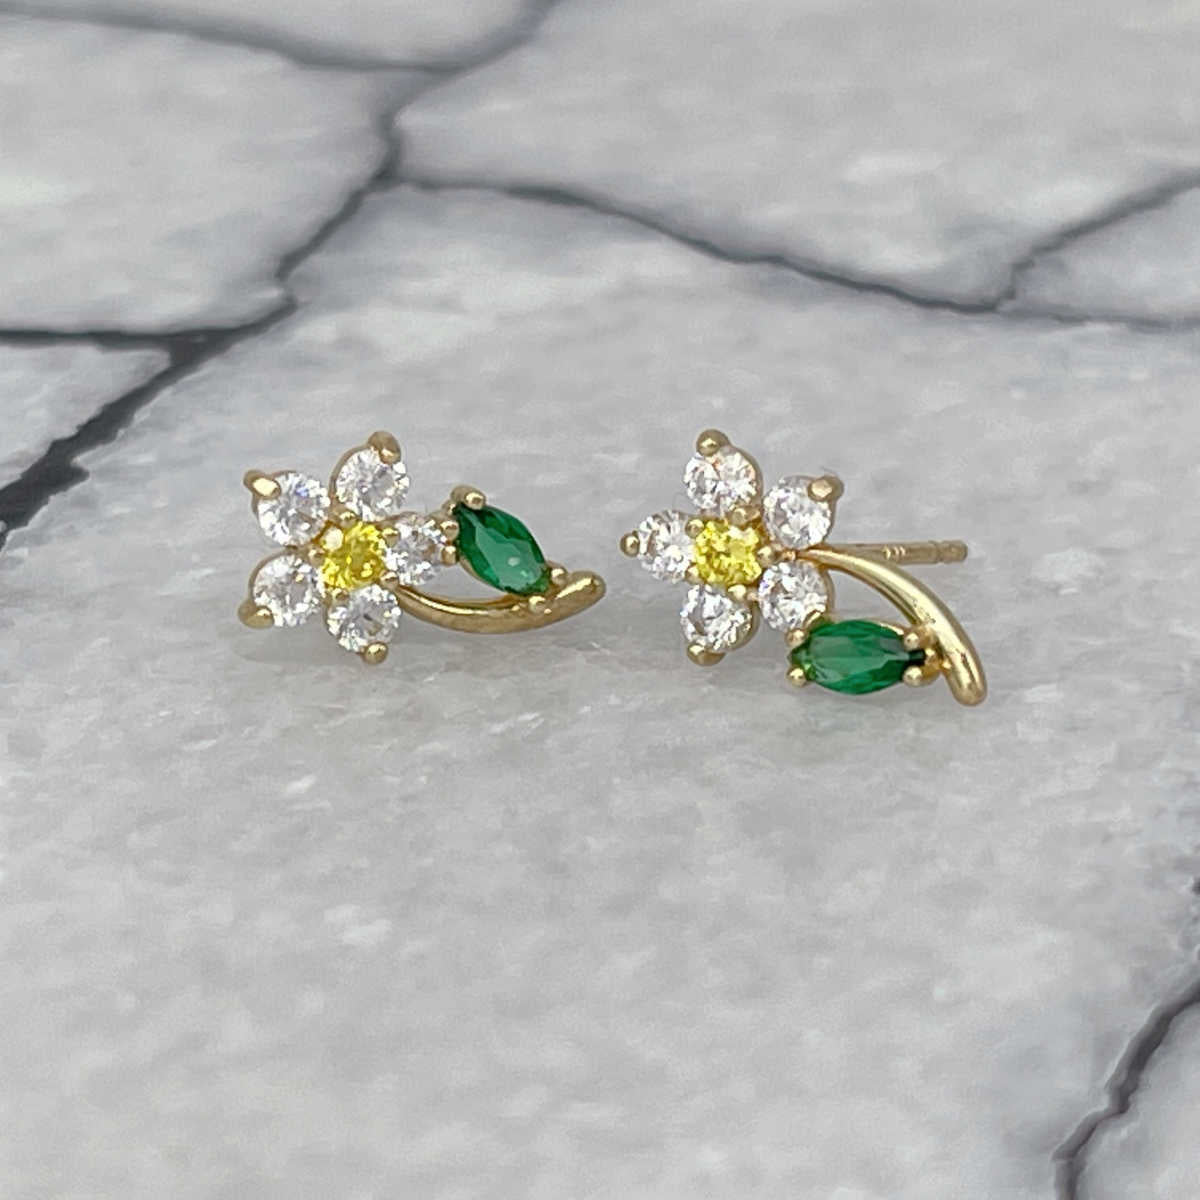 Diamond Flower Earrings, 14K Gold & Gemstone Studs, Two of Most Fine Jewelry